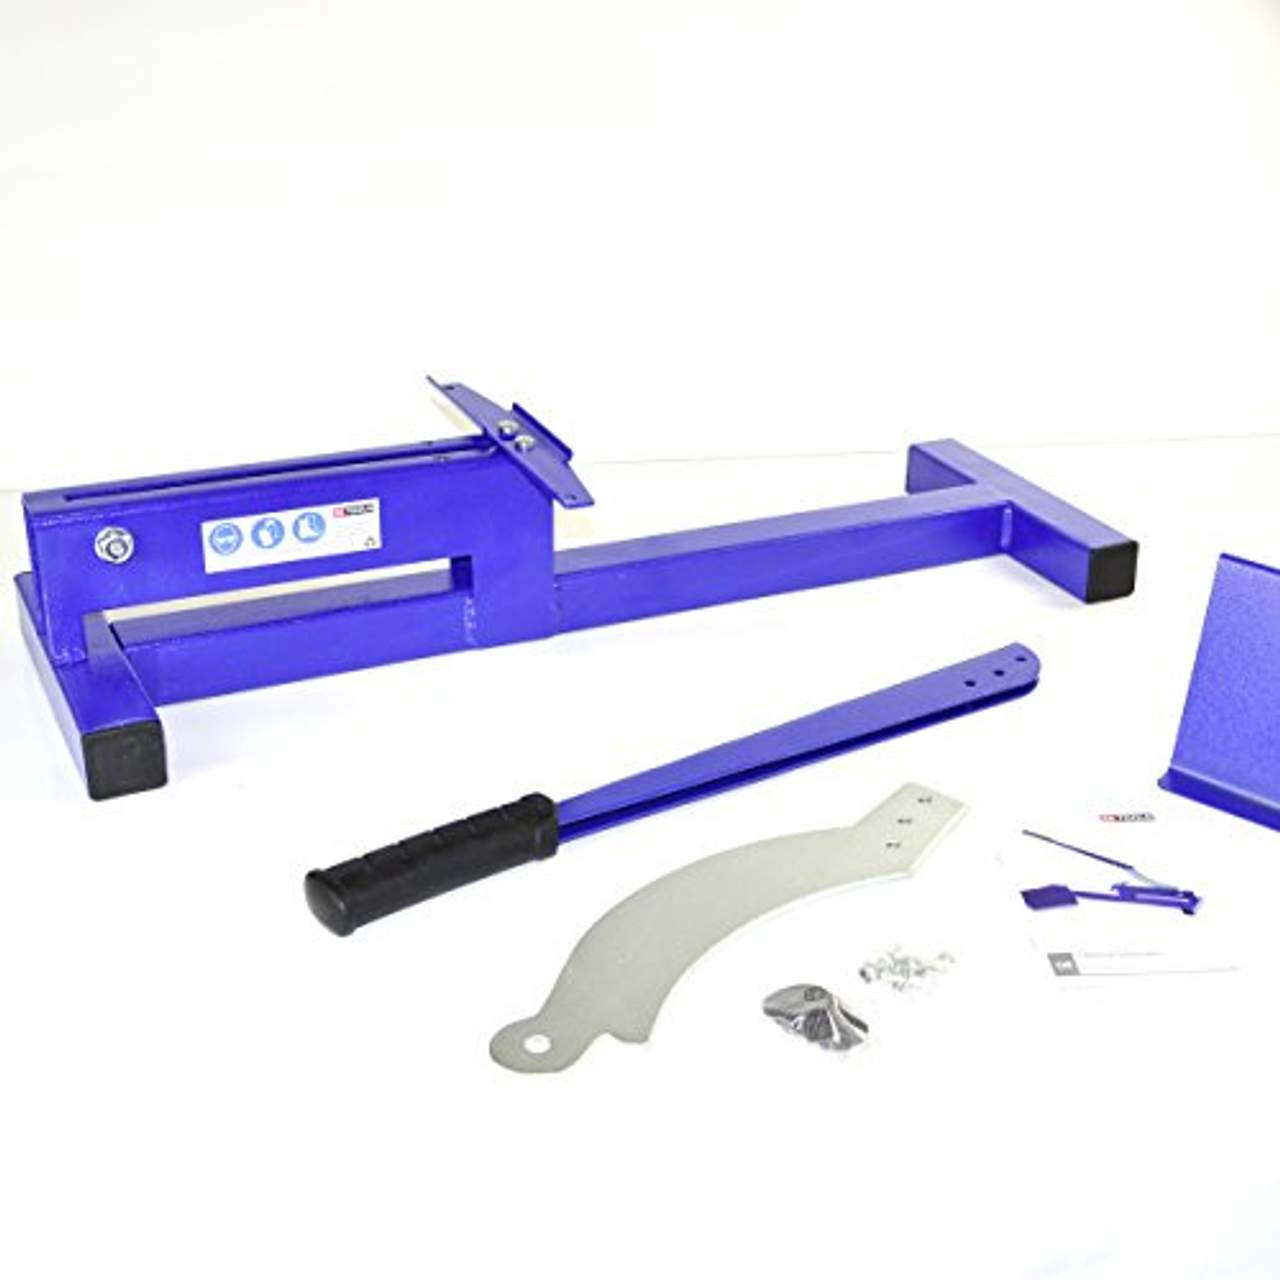 X4-TOOLS Laminatschneider blau Laminat schneiden bis 200mm Breite 11mm Stärke